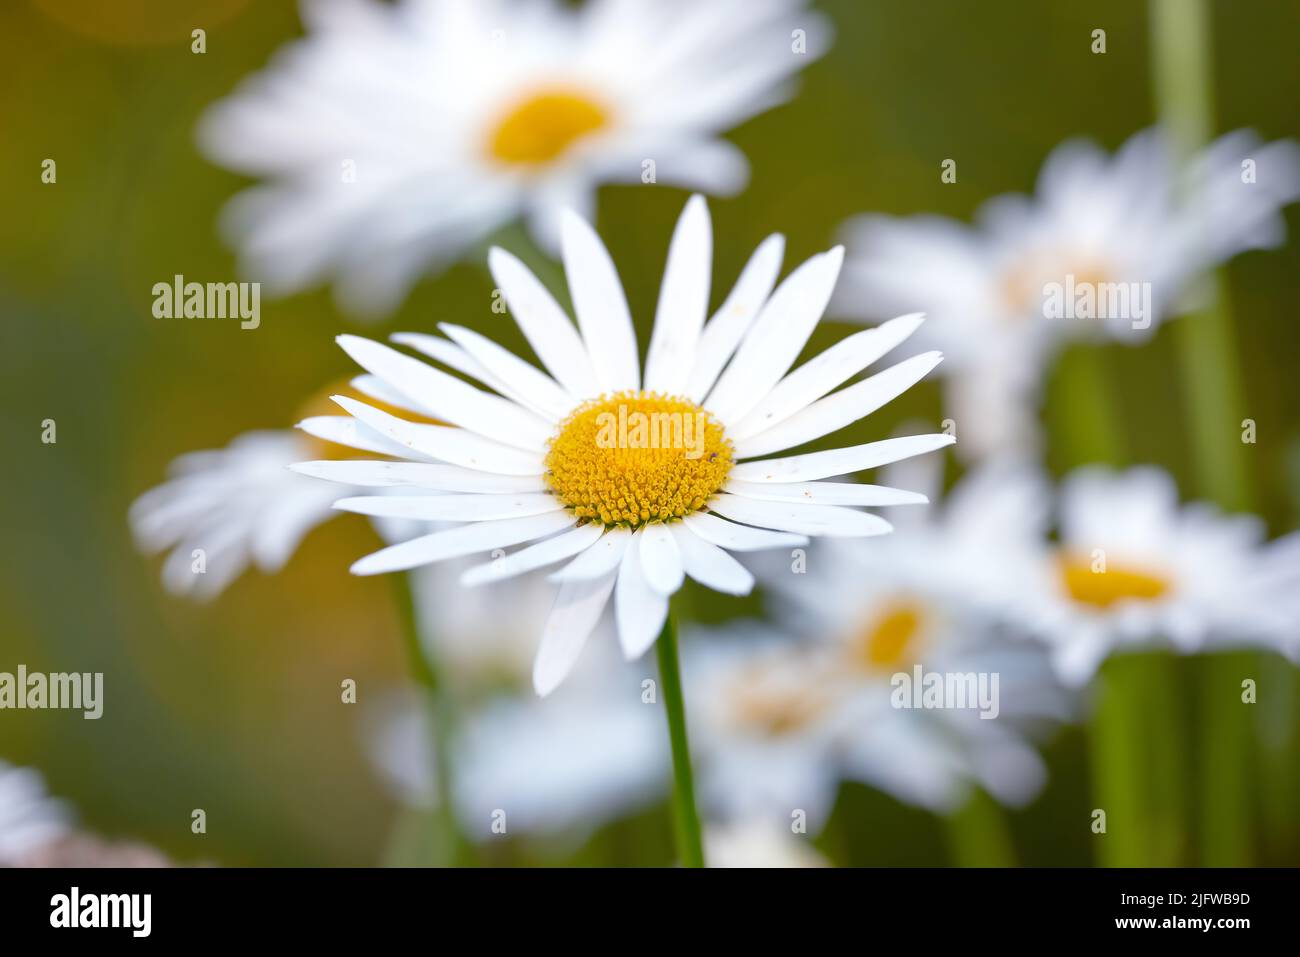 Vista ravvicinata di una margherita con foglie lunghe, gialla al centro e con gambo. Gruppo di fiori bianchi che brillano alla luce del sole. Chamomiles Foto Stock